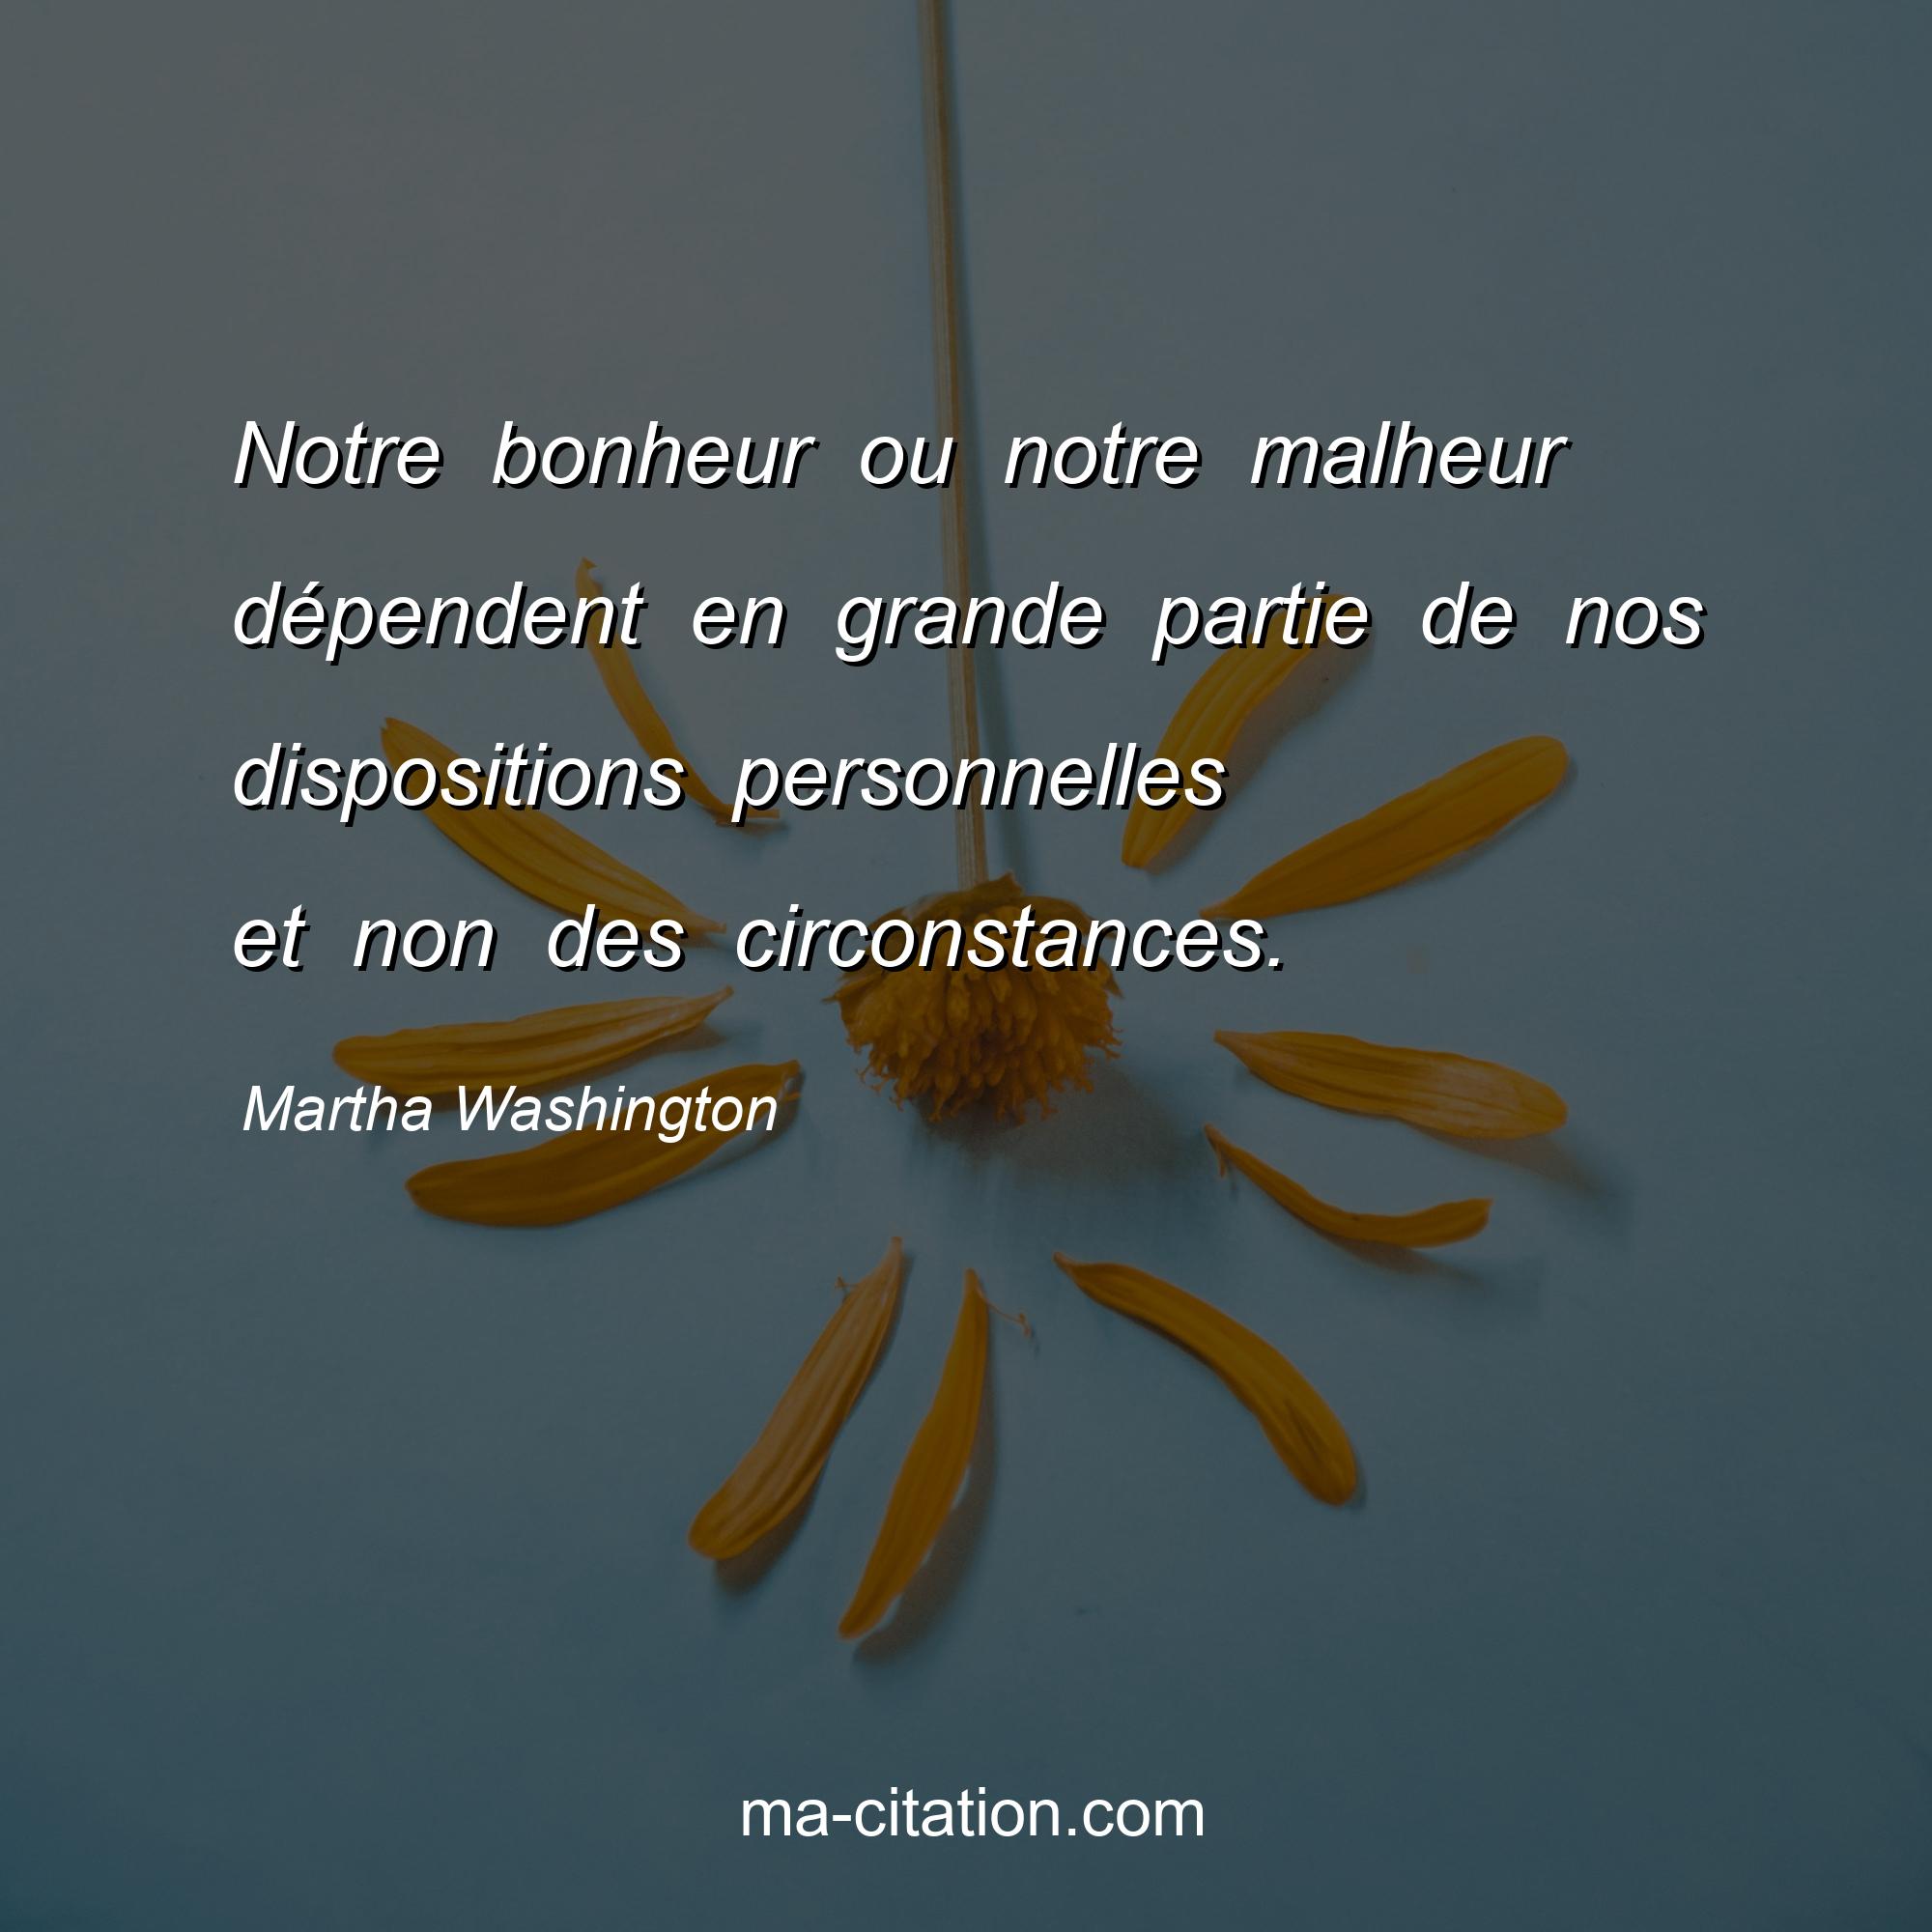 Martha Washington : Notre bonheur ou notre malheur dépendent en grande partie de nos dispositions personnelles et non des circonstances.